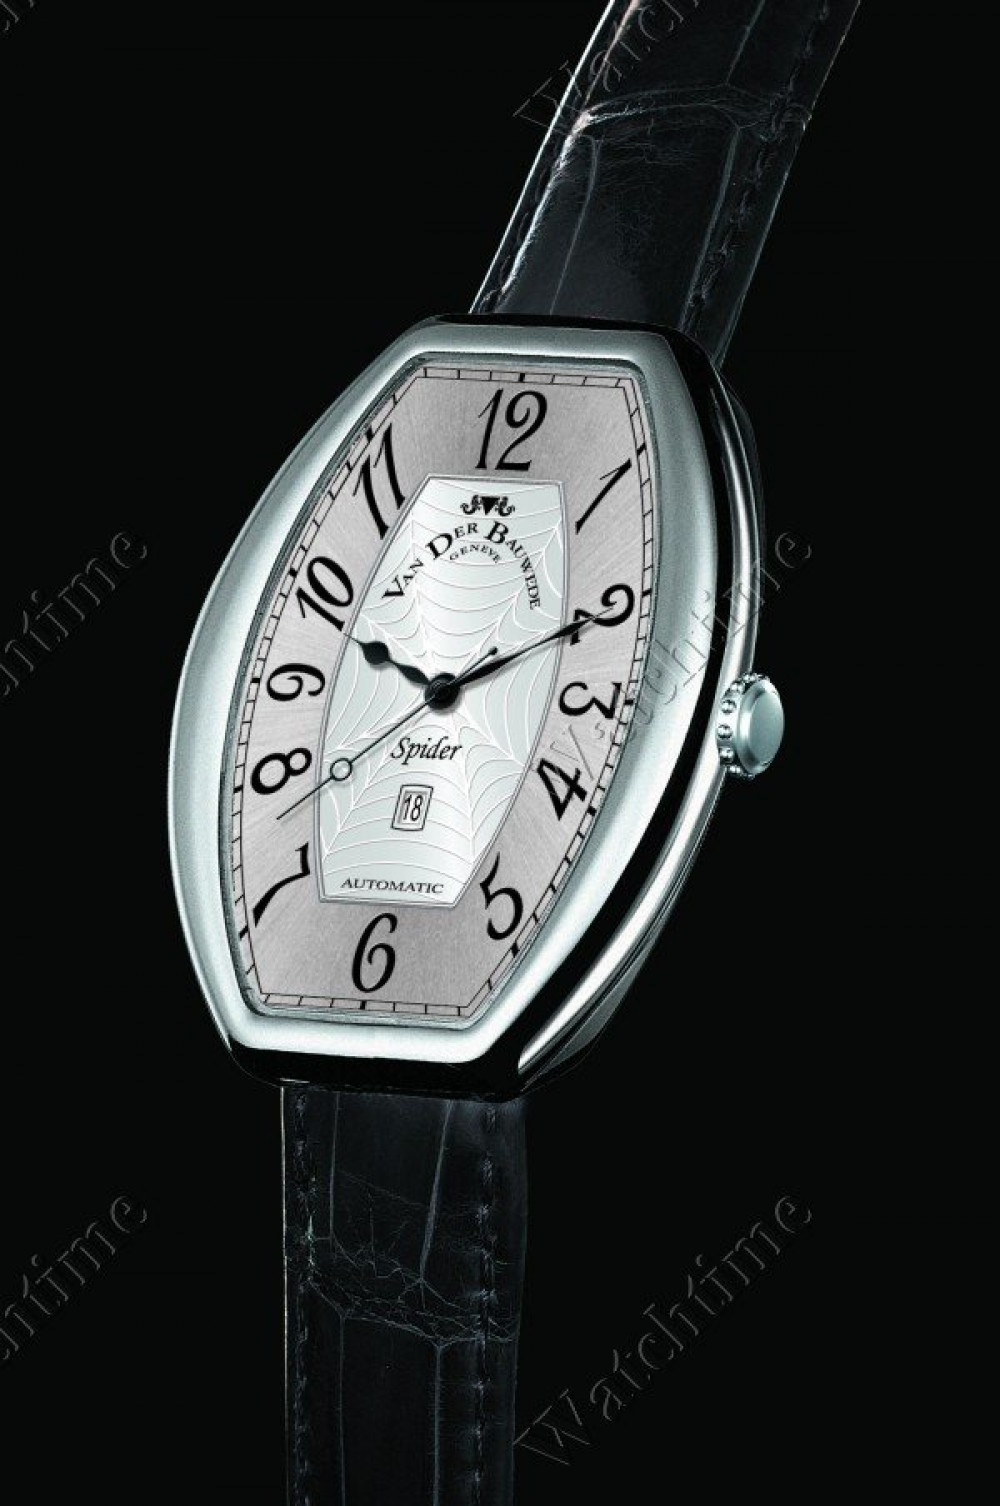 Zegarek firmy Van der Bauwede Genève, model Spider Elegance